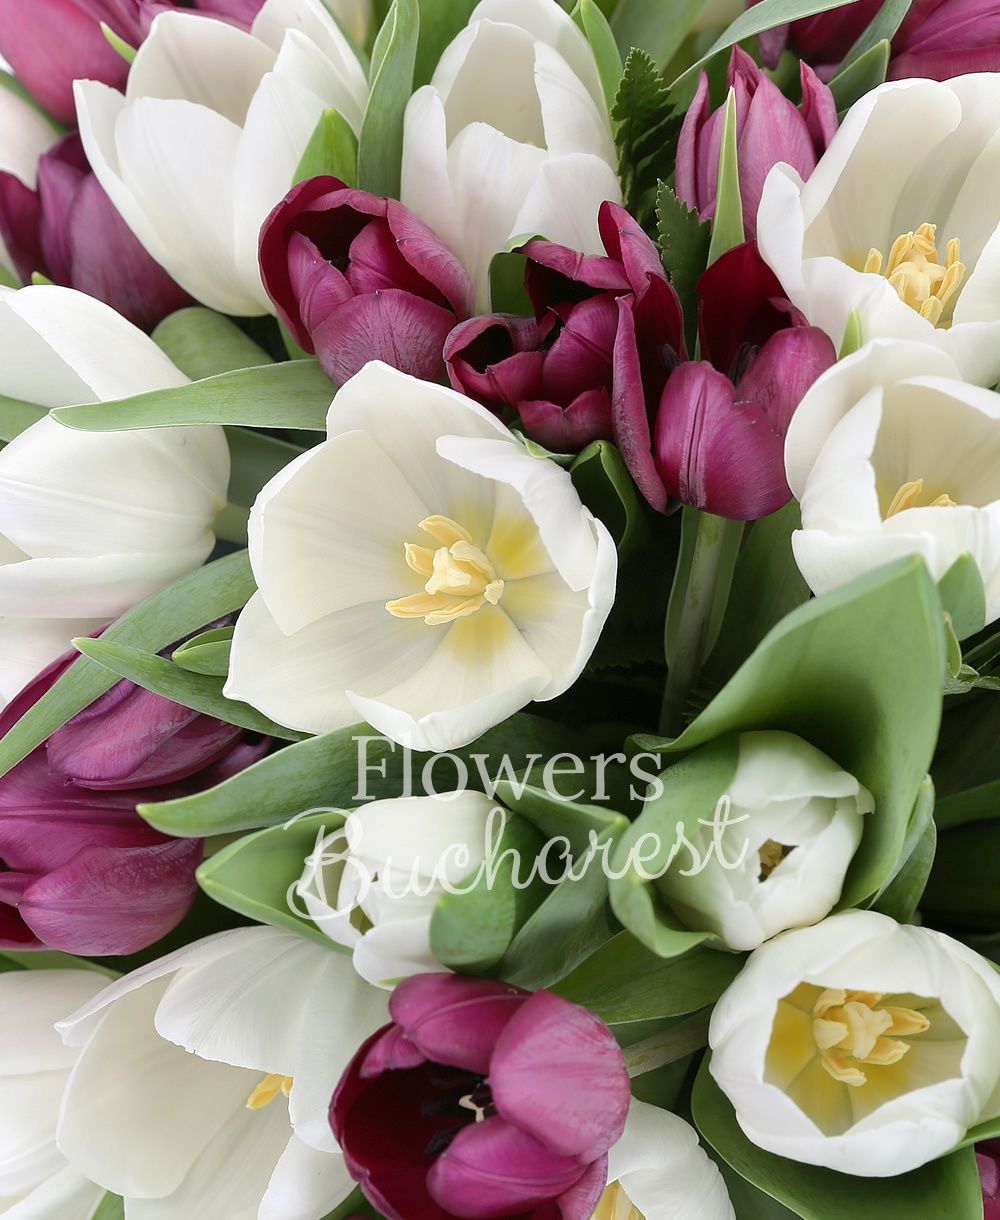 30 garnet tulips, 20 white tulips, greenery